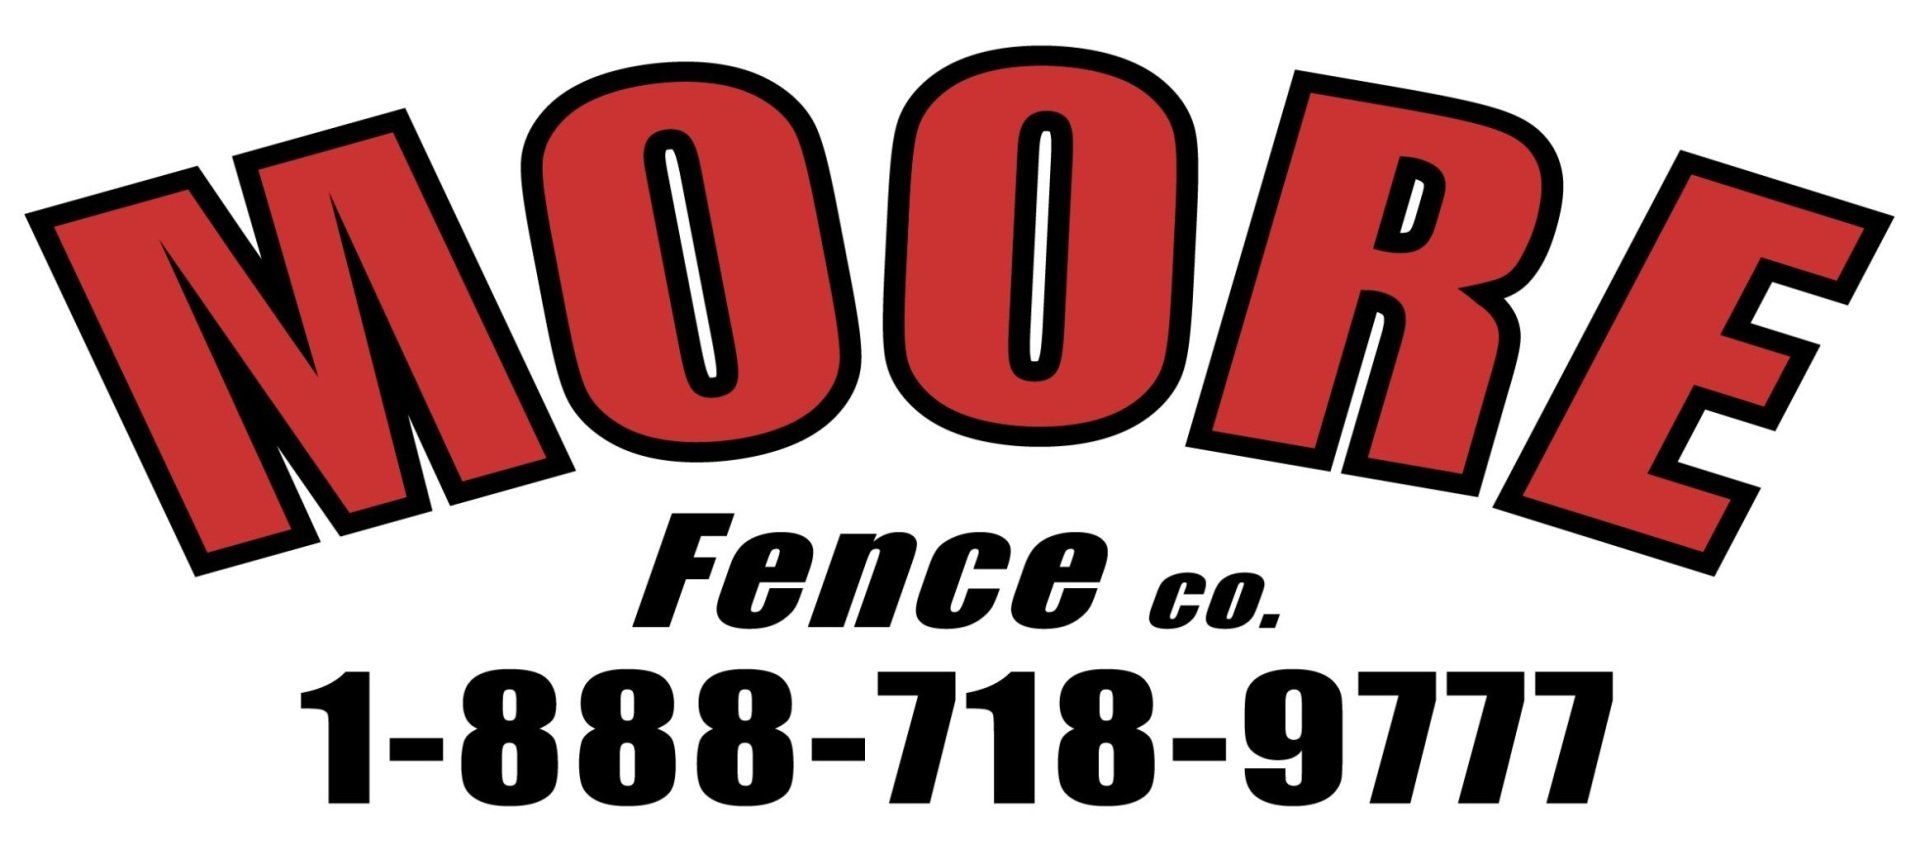 Moore Fence Co - logo